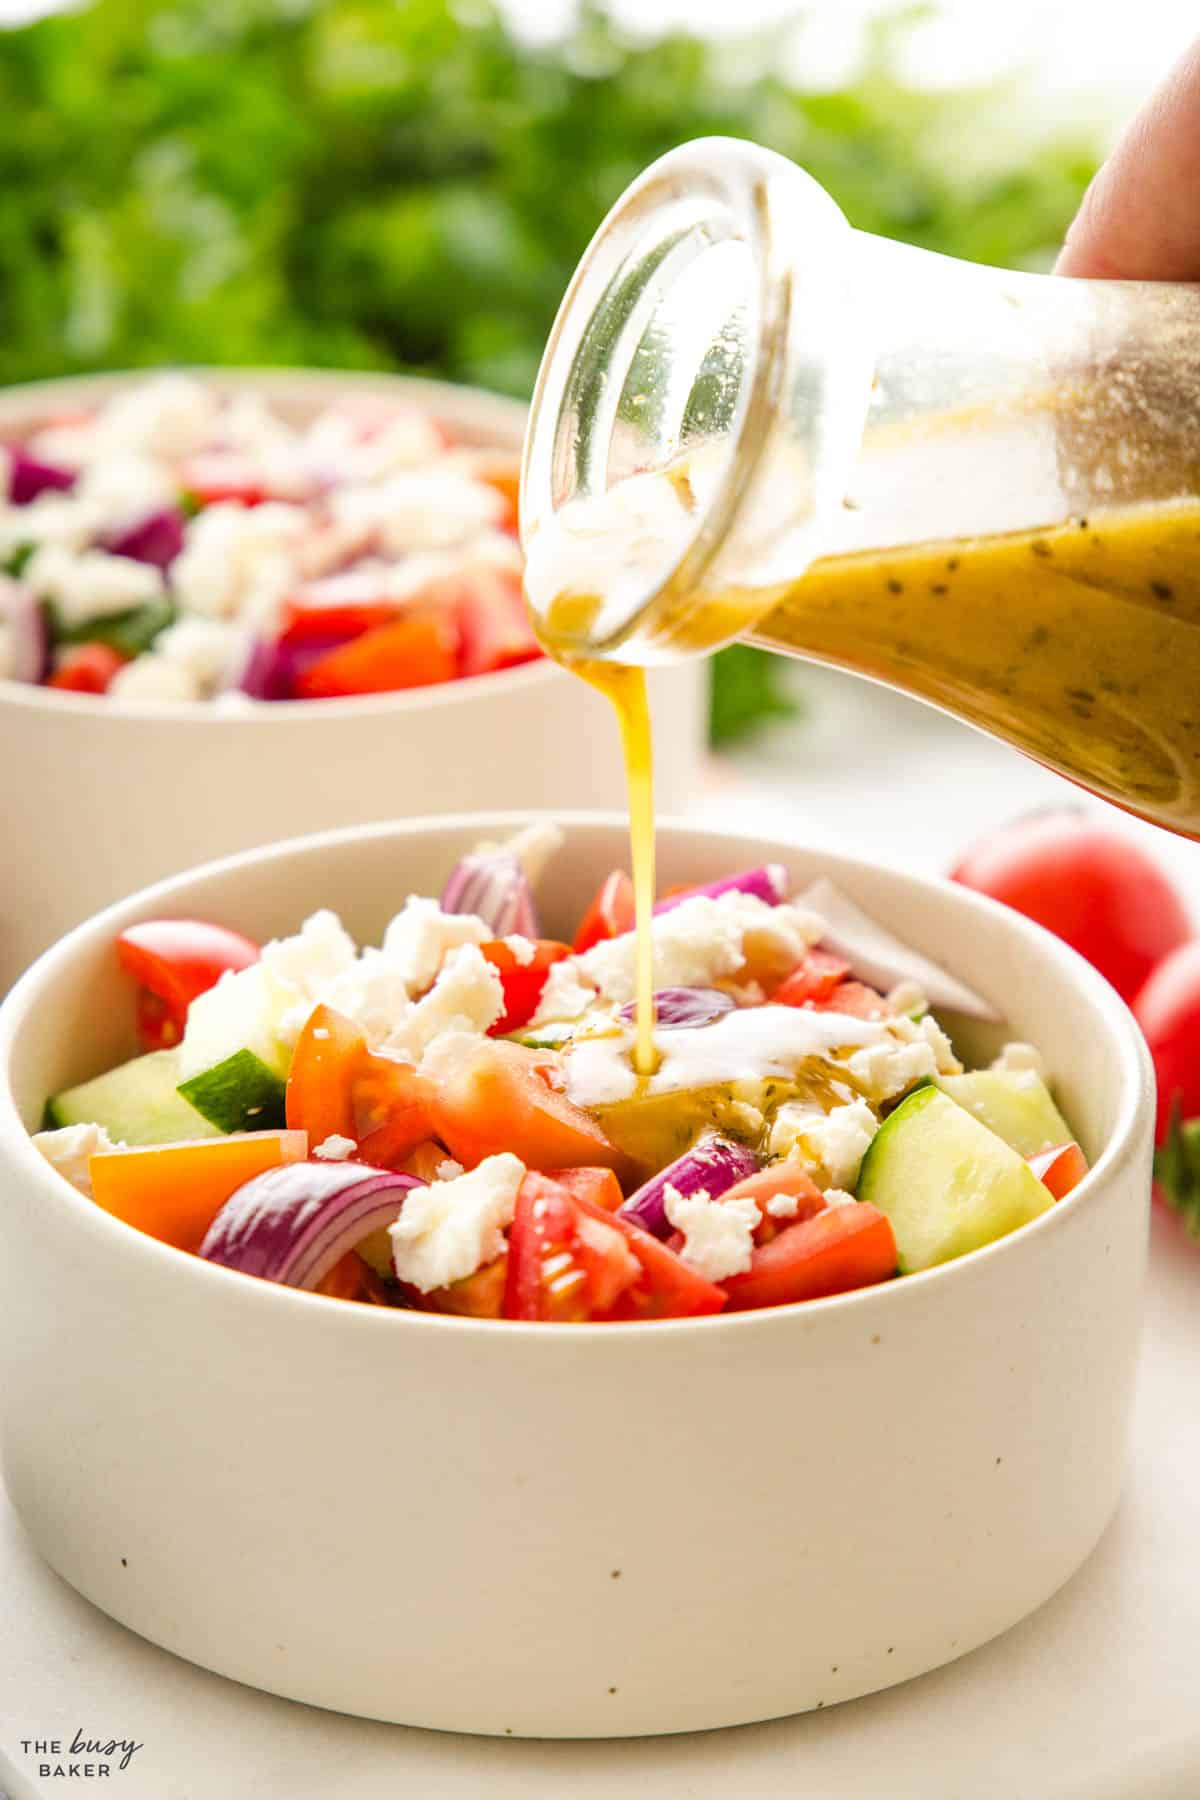 vinaigrette salad dressing over Greek salad